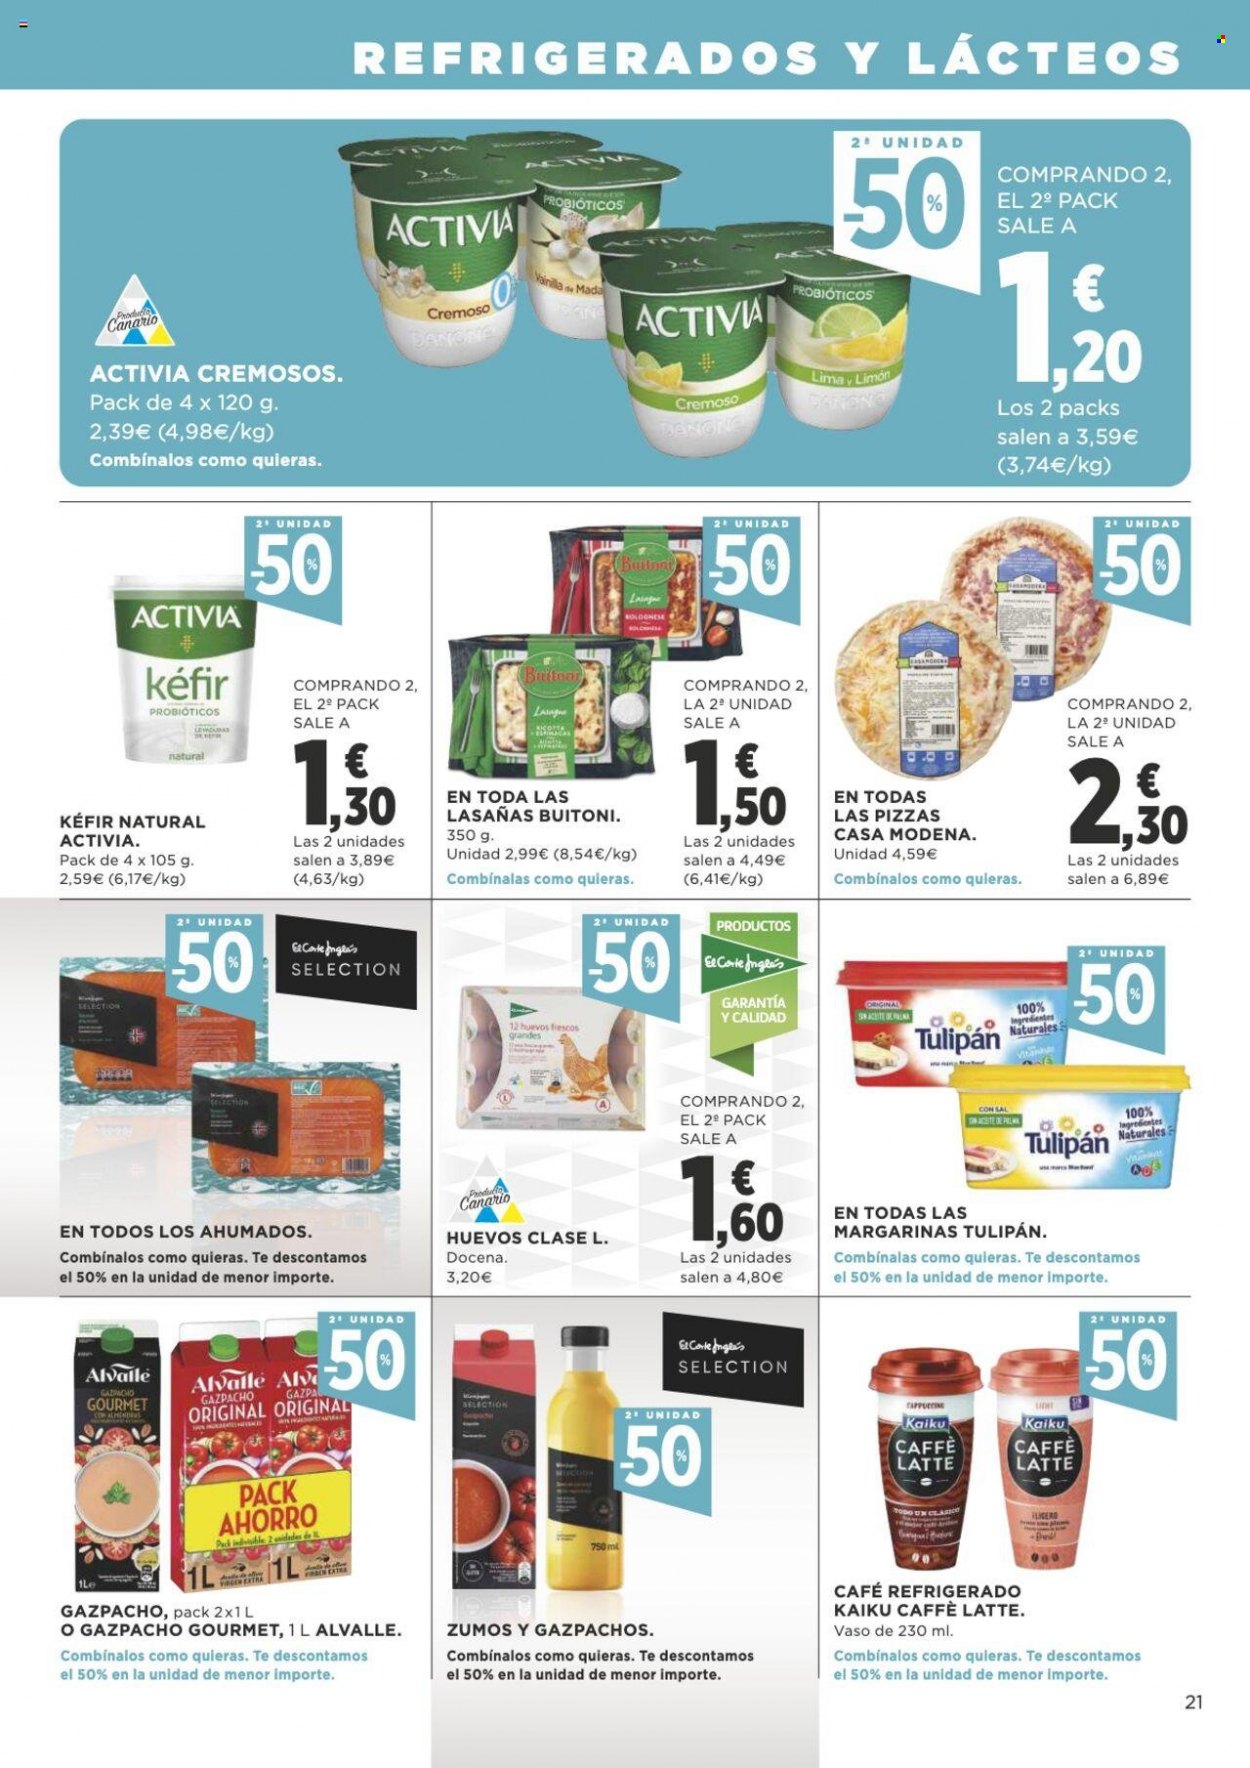 thumbnail - Folleto actual Supercor supermercados - 19/05/22 - 01/06/22 - Ventas - limón, pizza, Activia, almendra, café, caffè latte, vaso. Página 21.